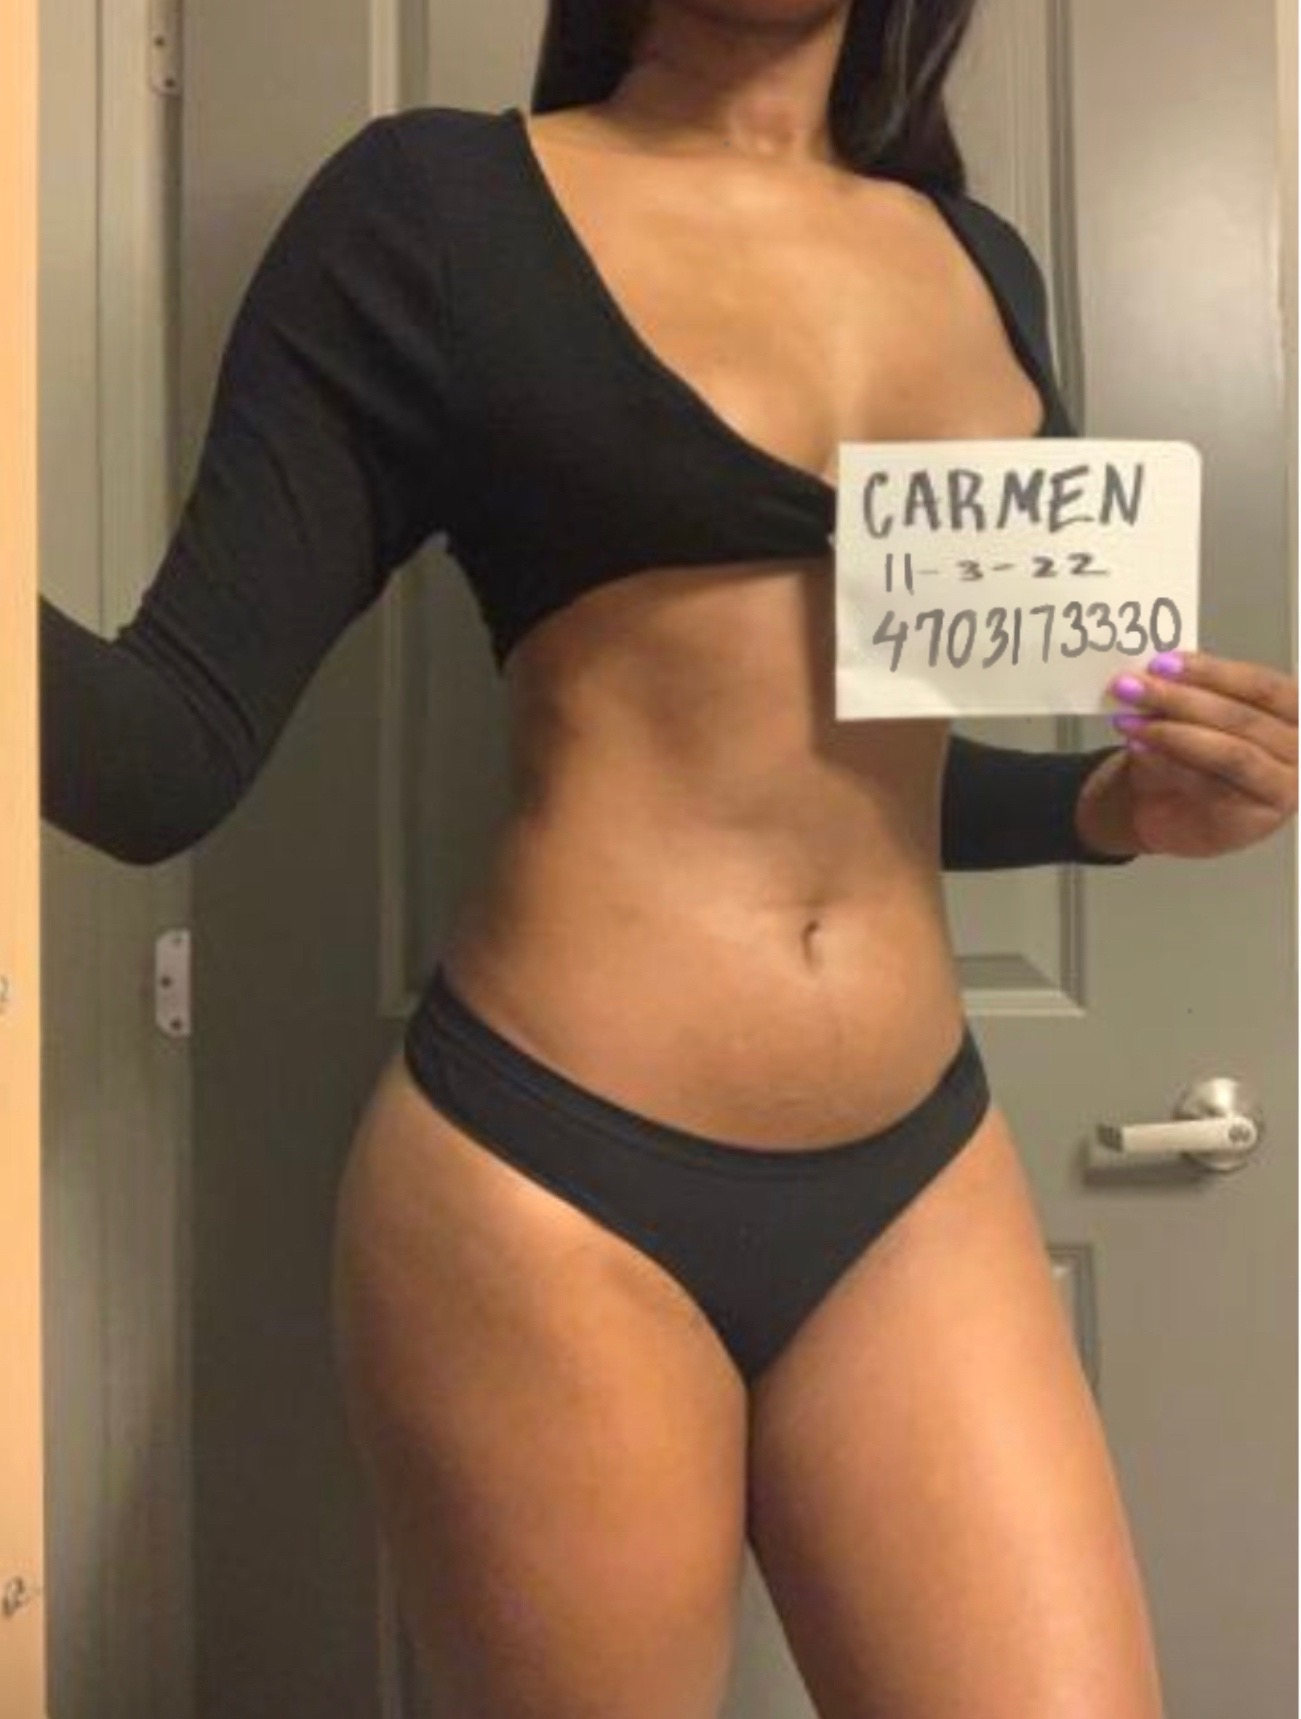 (470) 173-3330 - Nude Body2Body by Carmen in Atlanta, Georgia